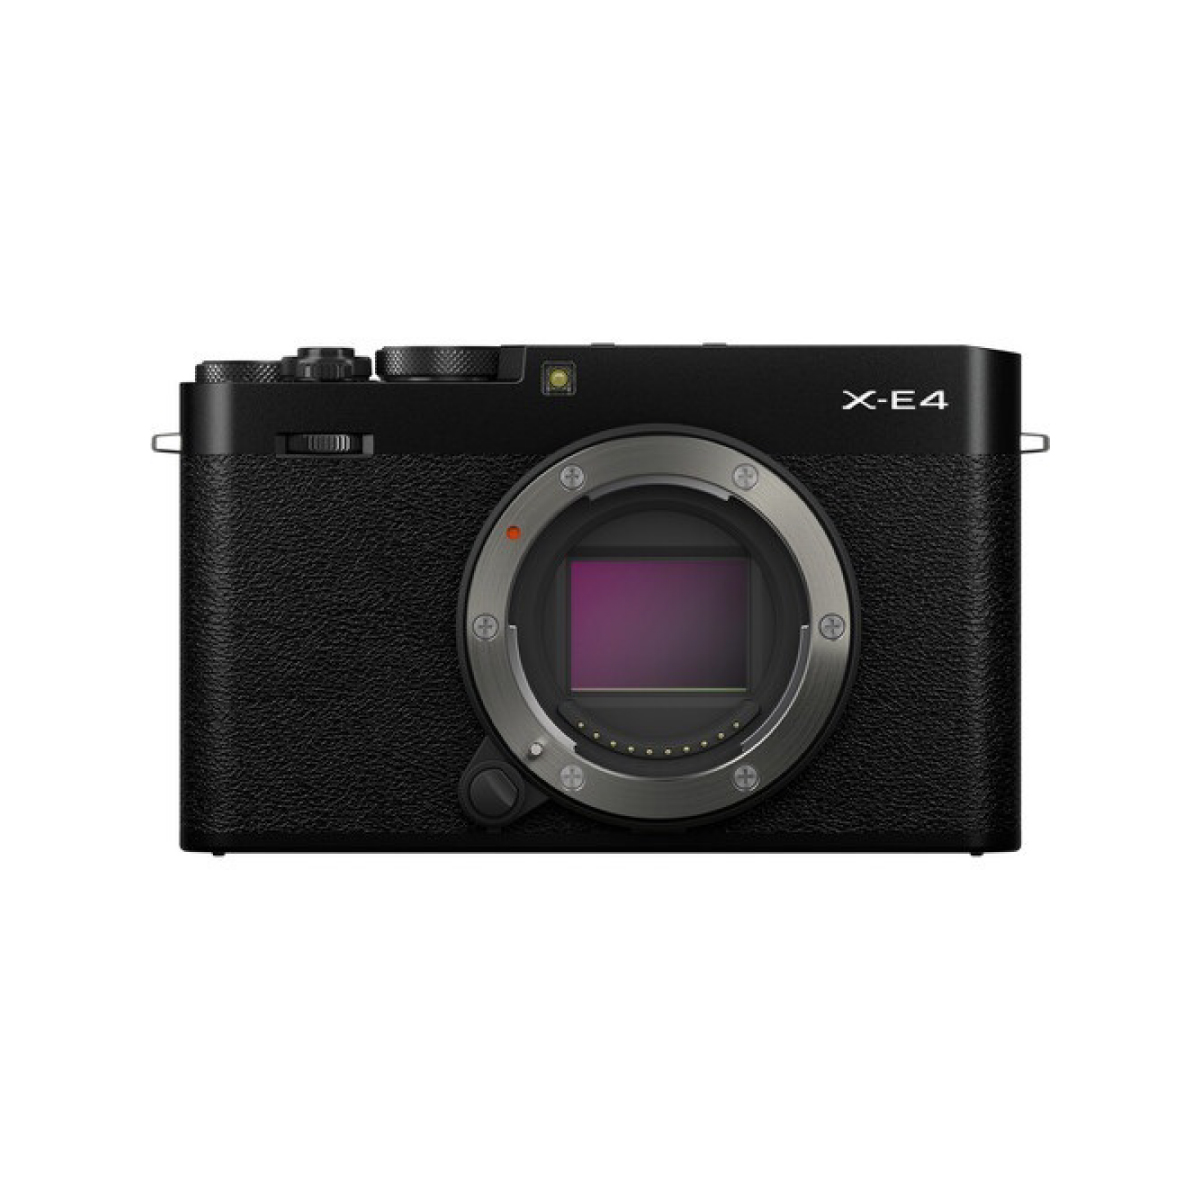 Fujifilm X-E4 Mirrorless Camera Body with Accessories – Black 1 (3)